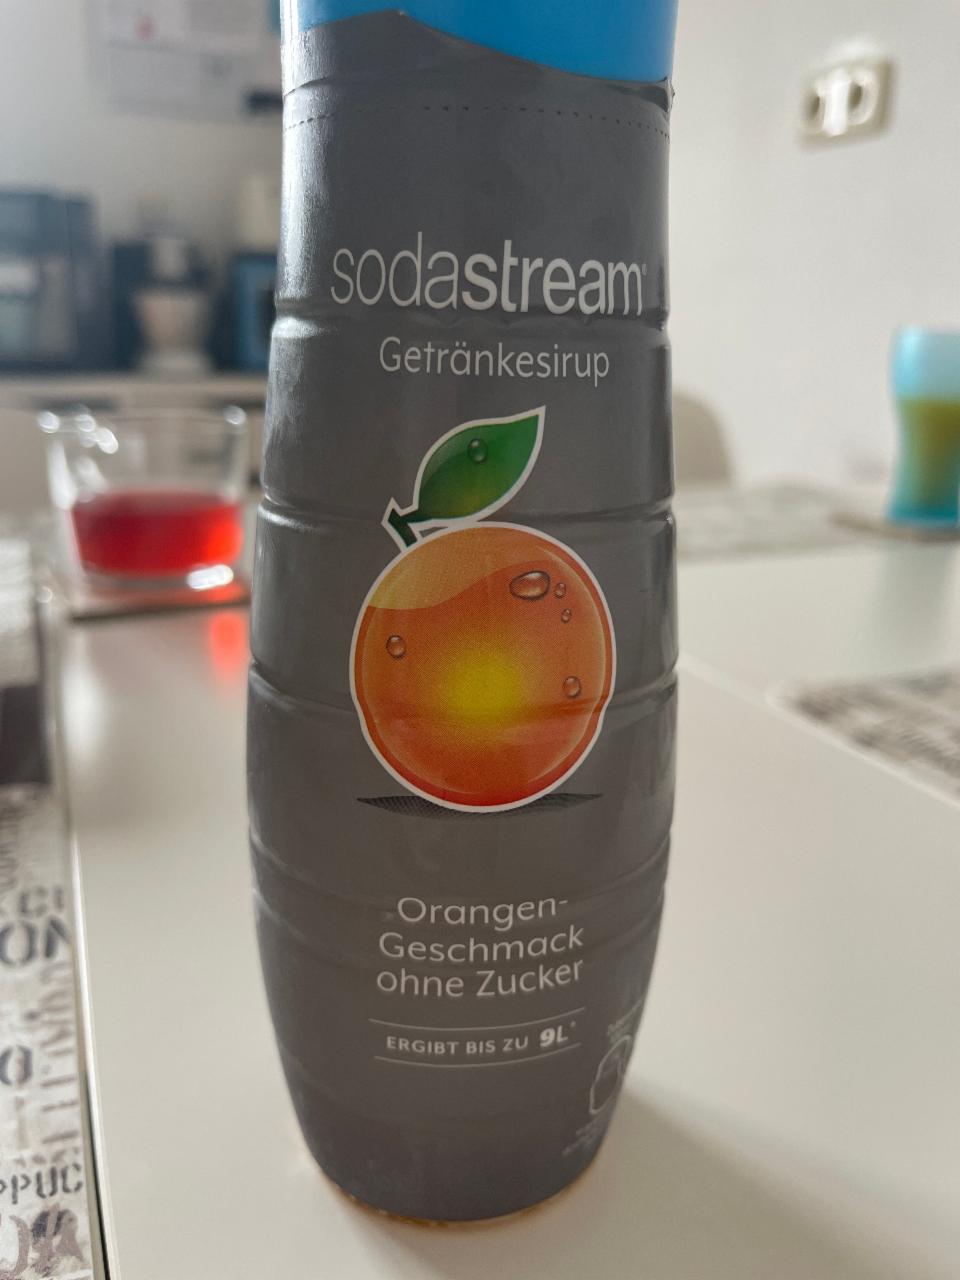 Фото - Orangen-Geschmack ohne Zucker Sodastream